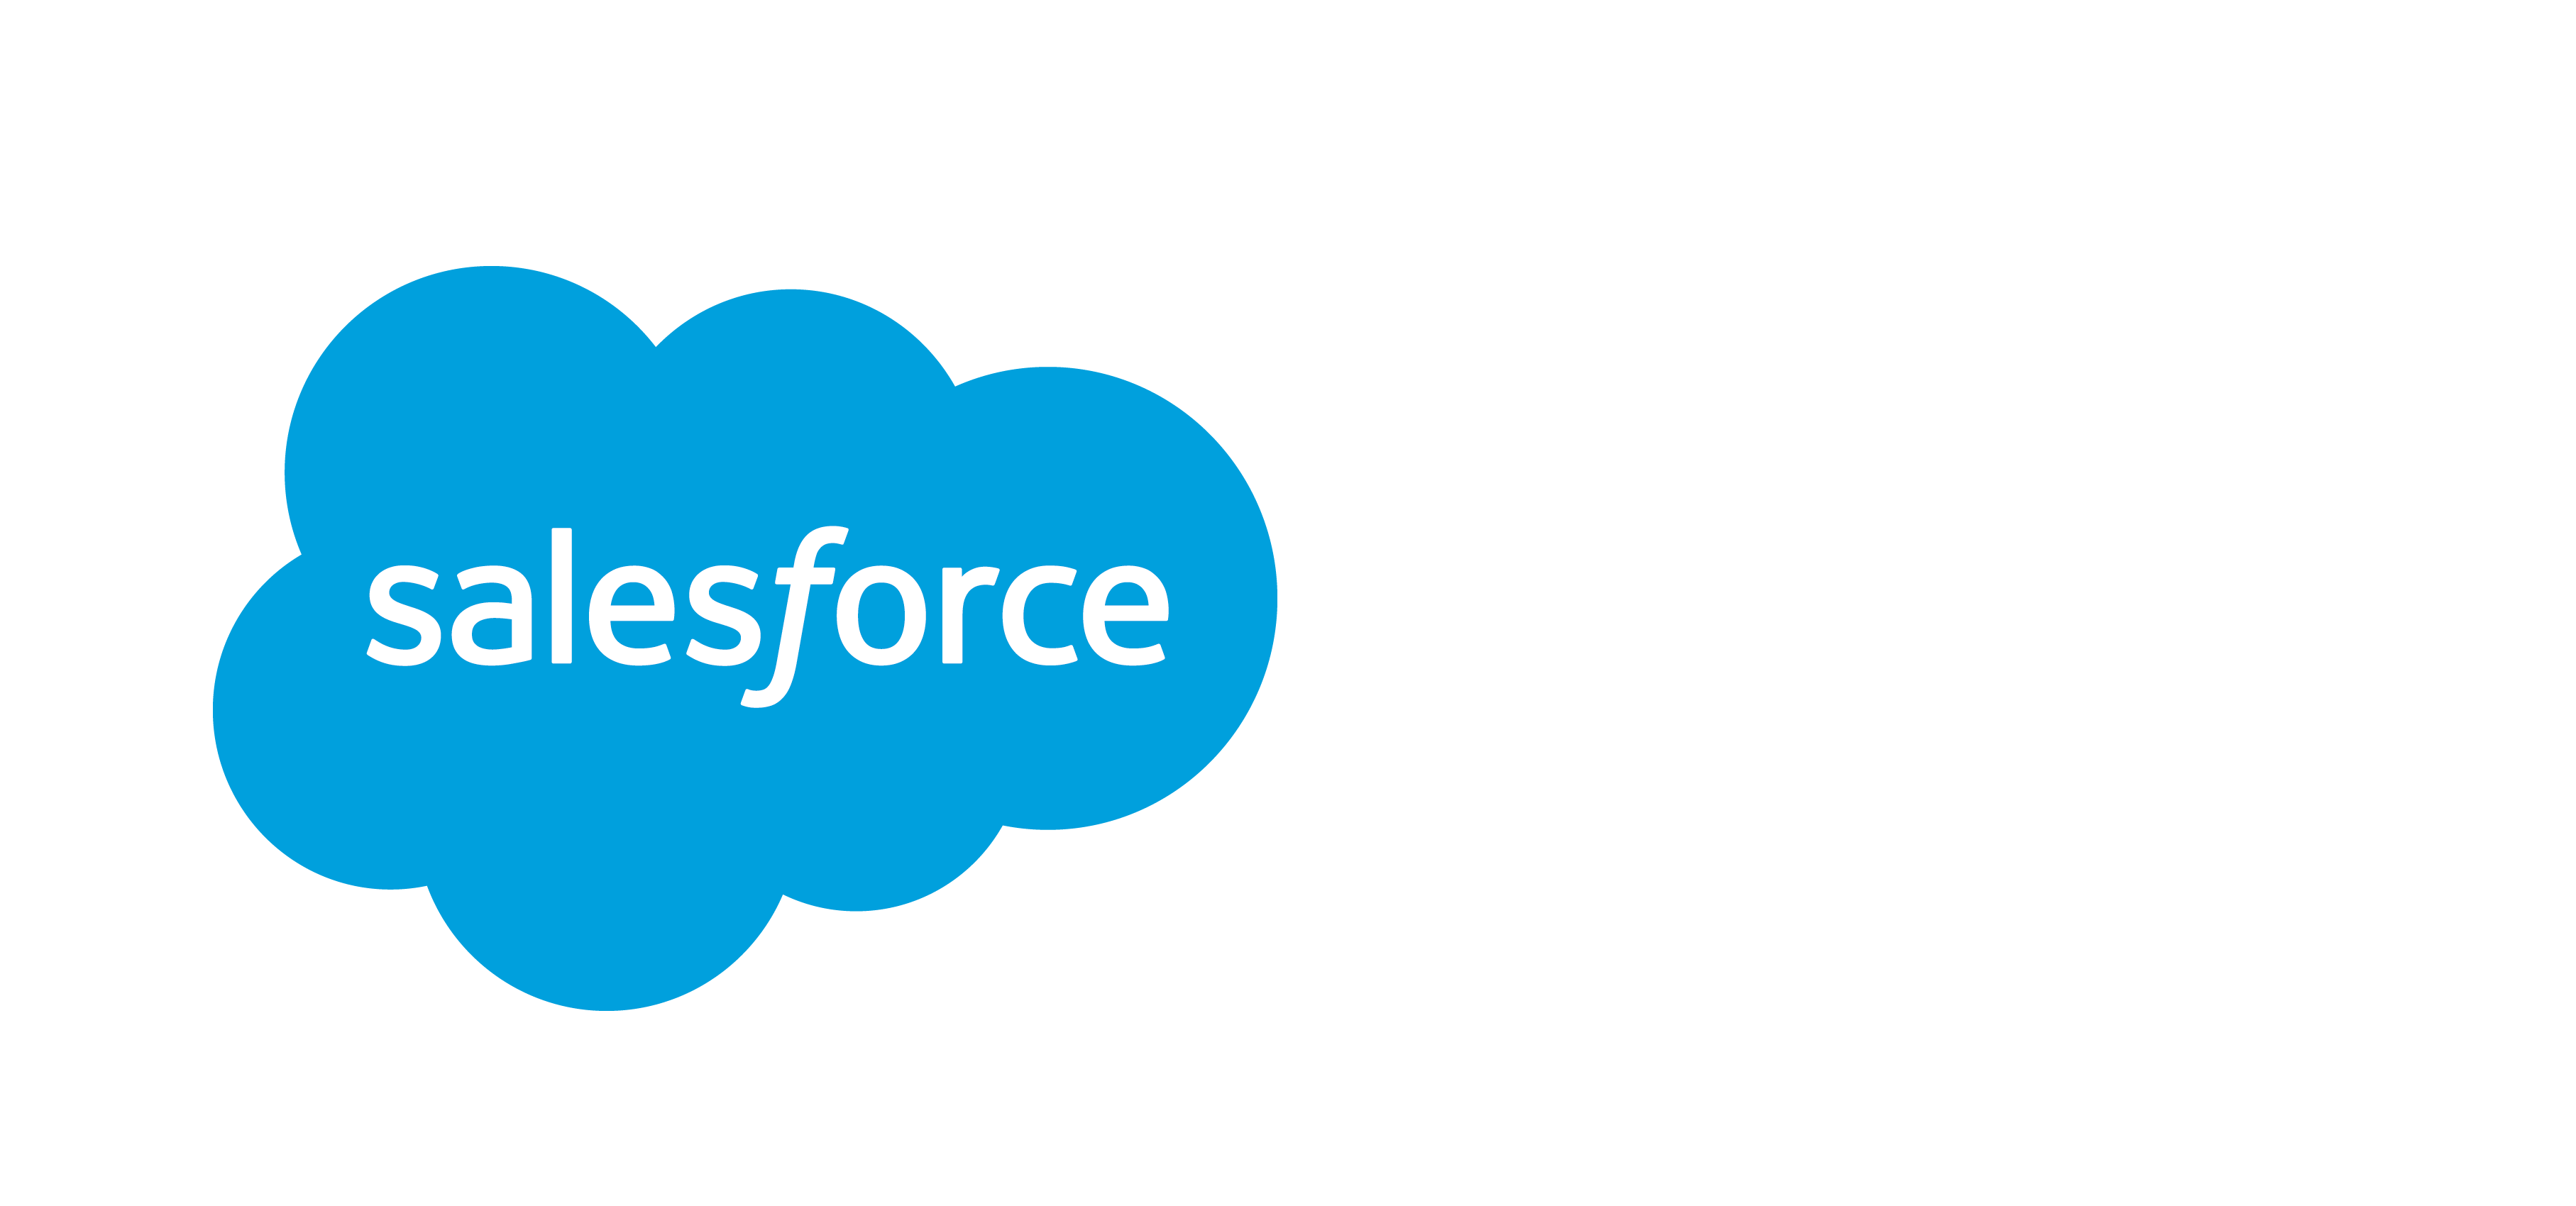 Salesforce Platform Logo - Einstein